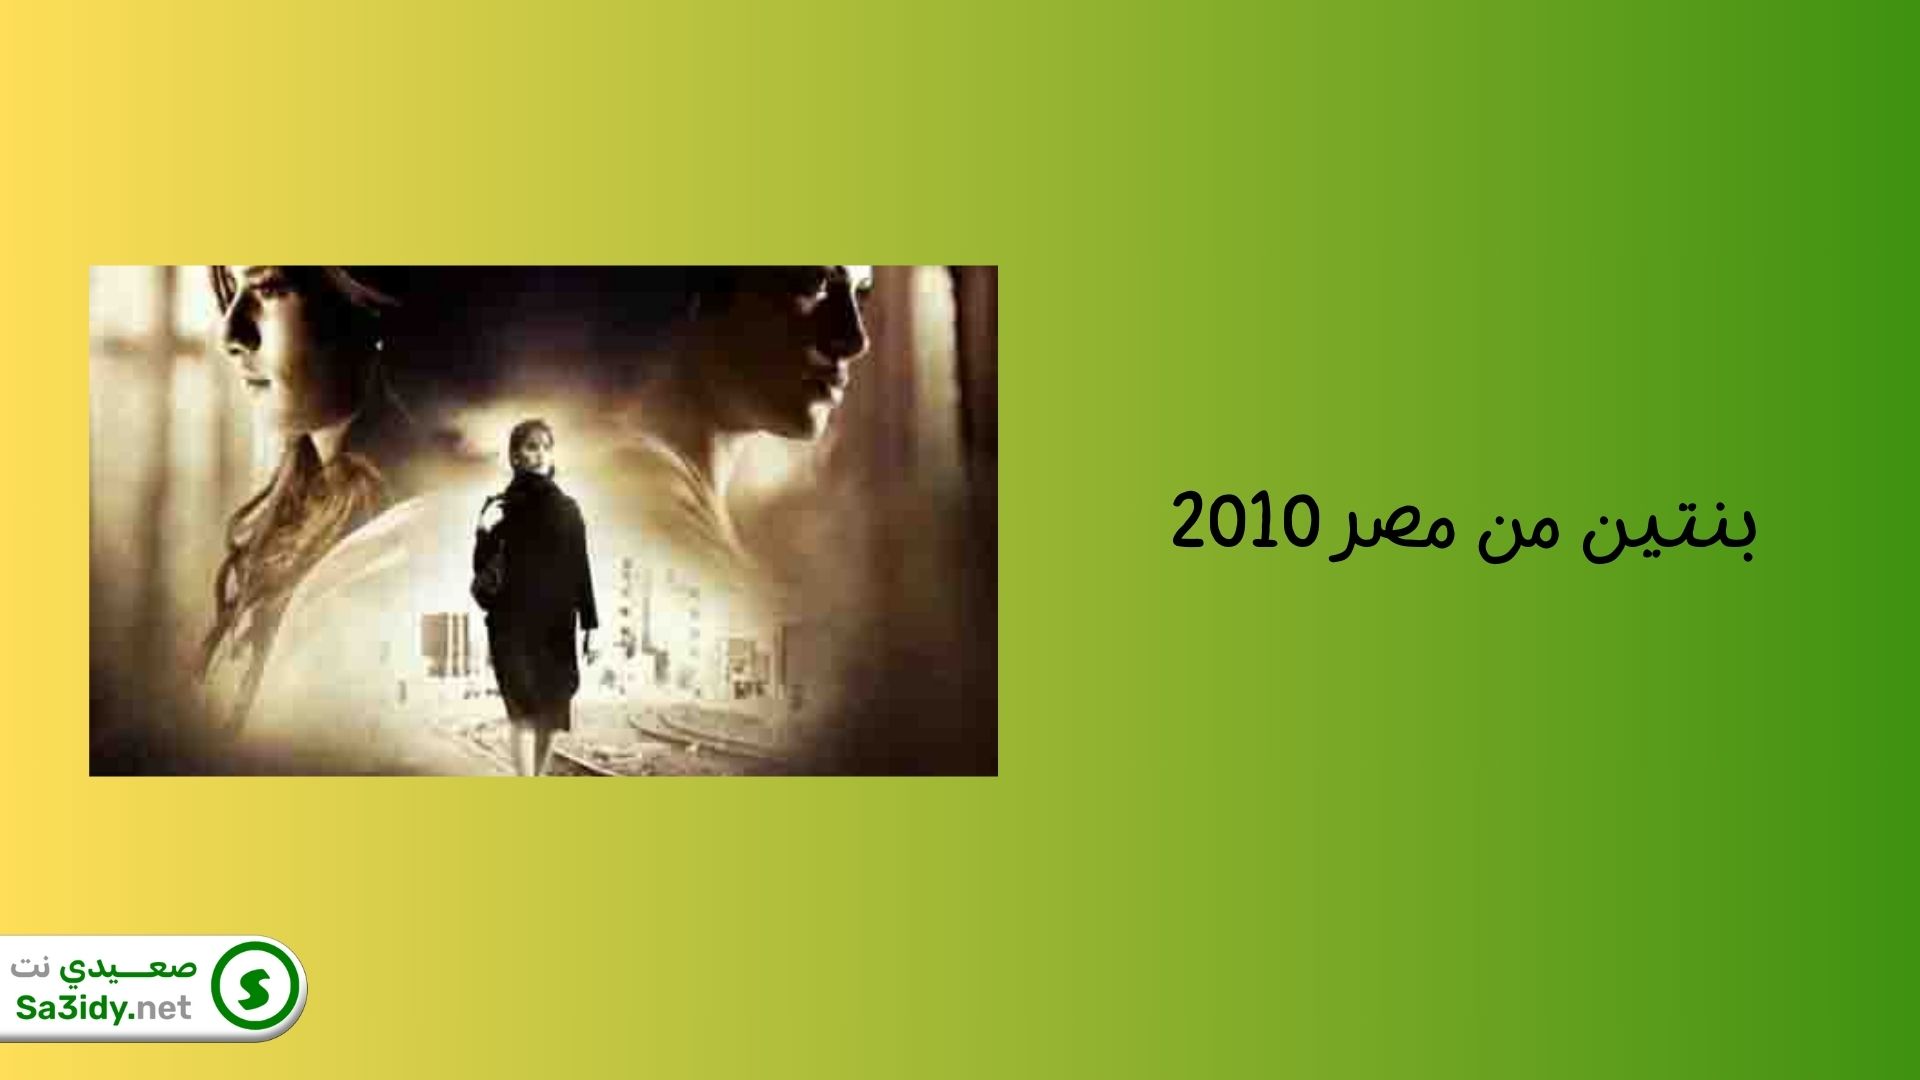 أفضل 10 أفلام مصرية حزينة: جرعة كبيرة من البكاء لا تفوتك مشاهدتهم